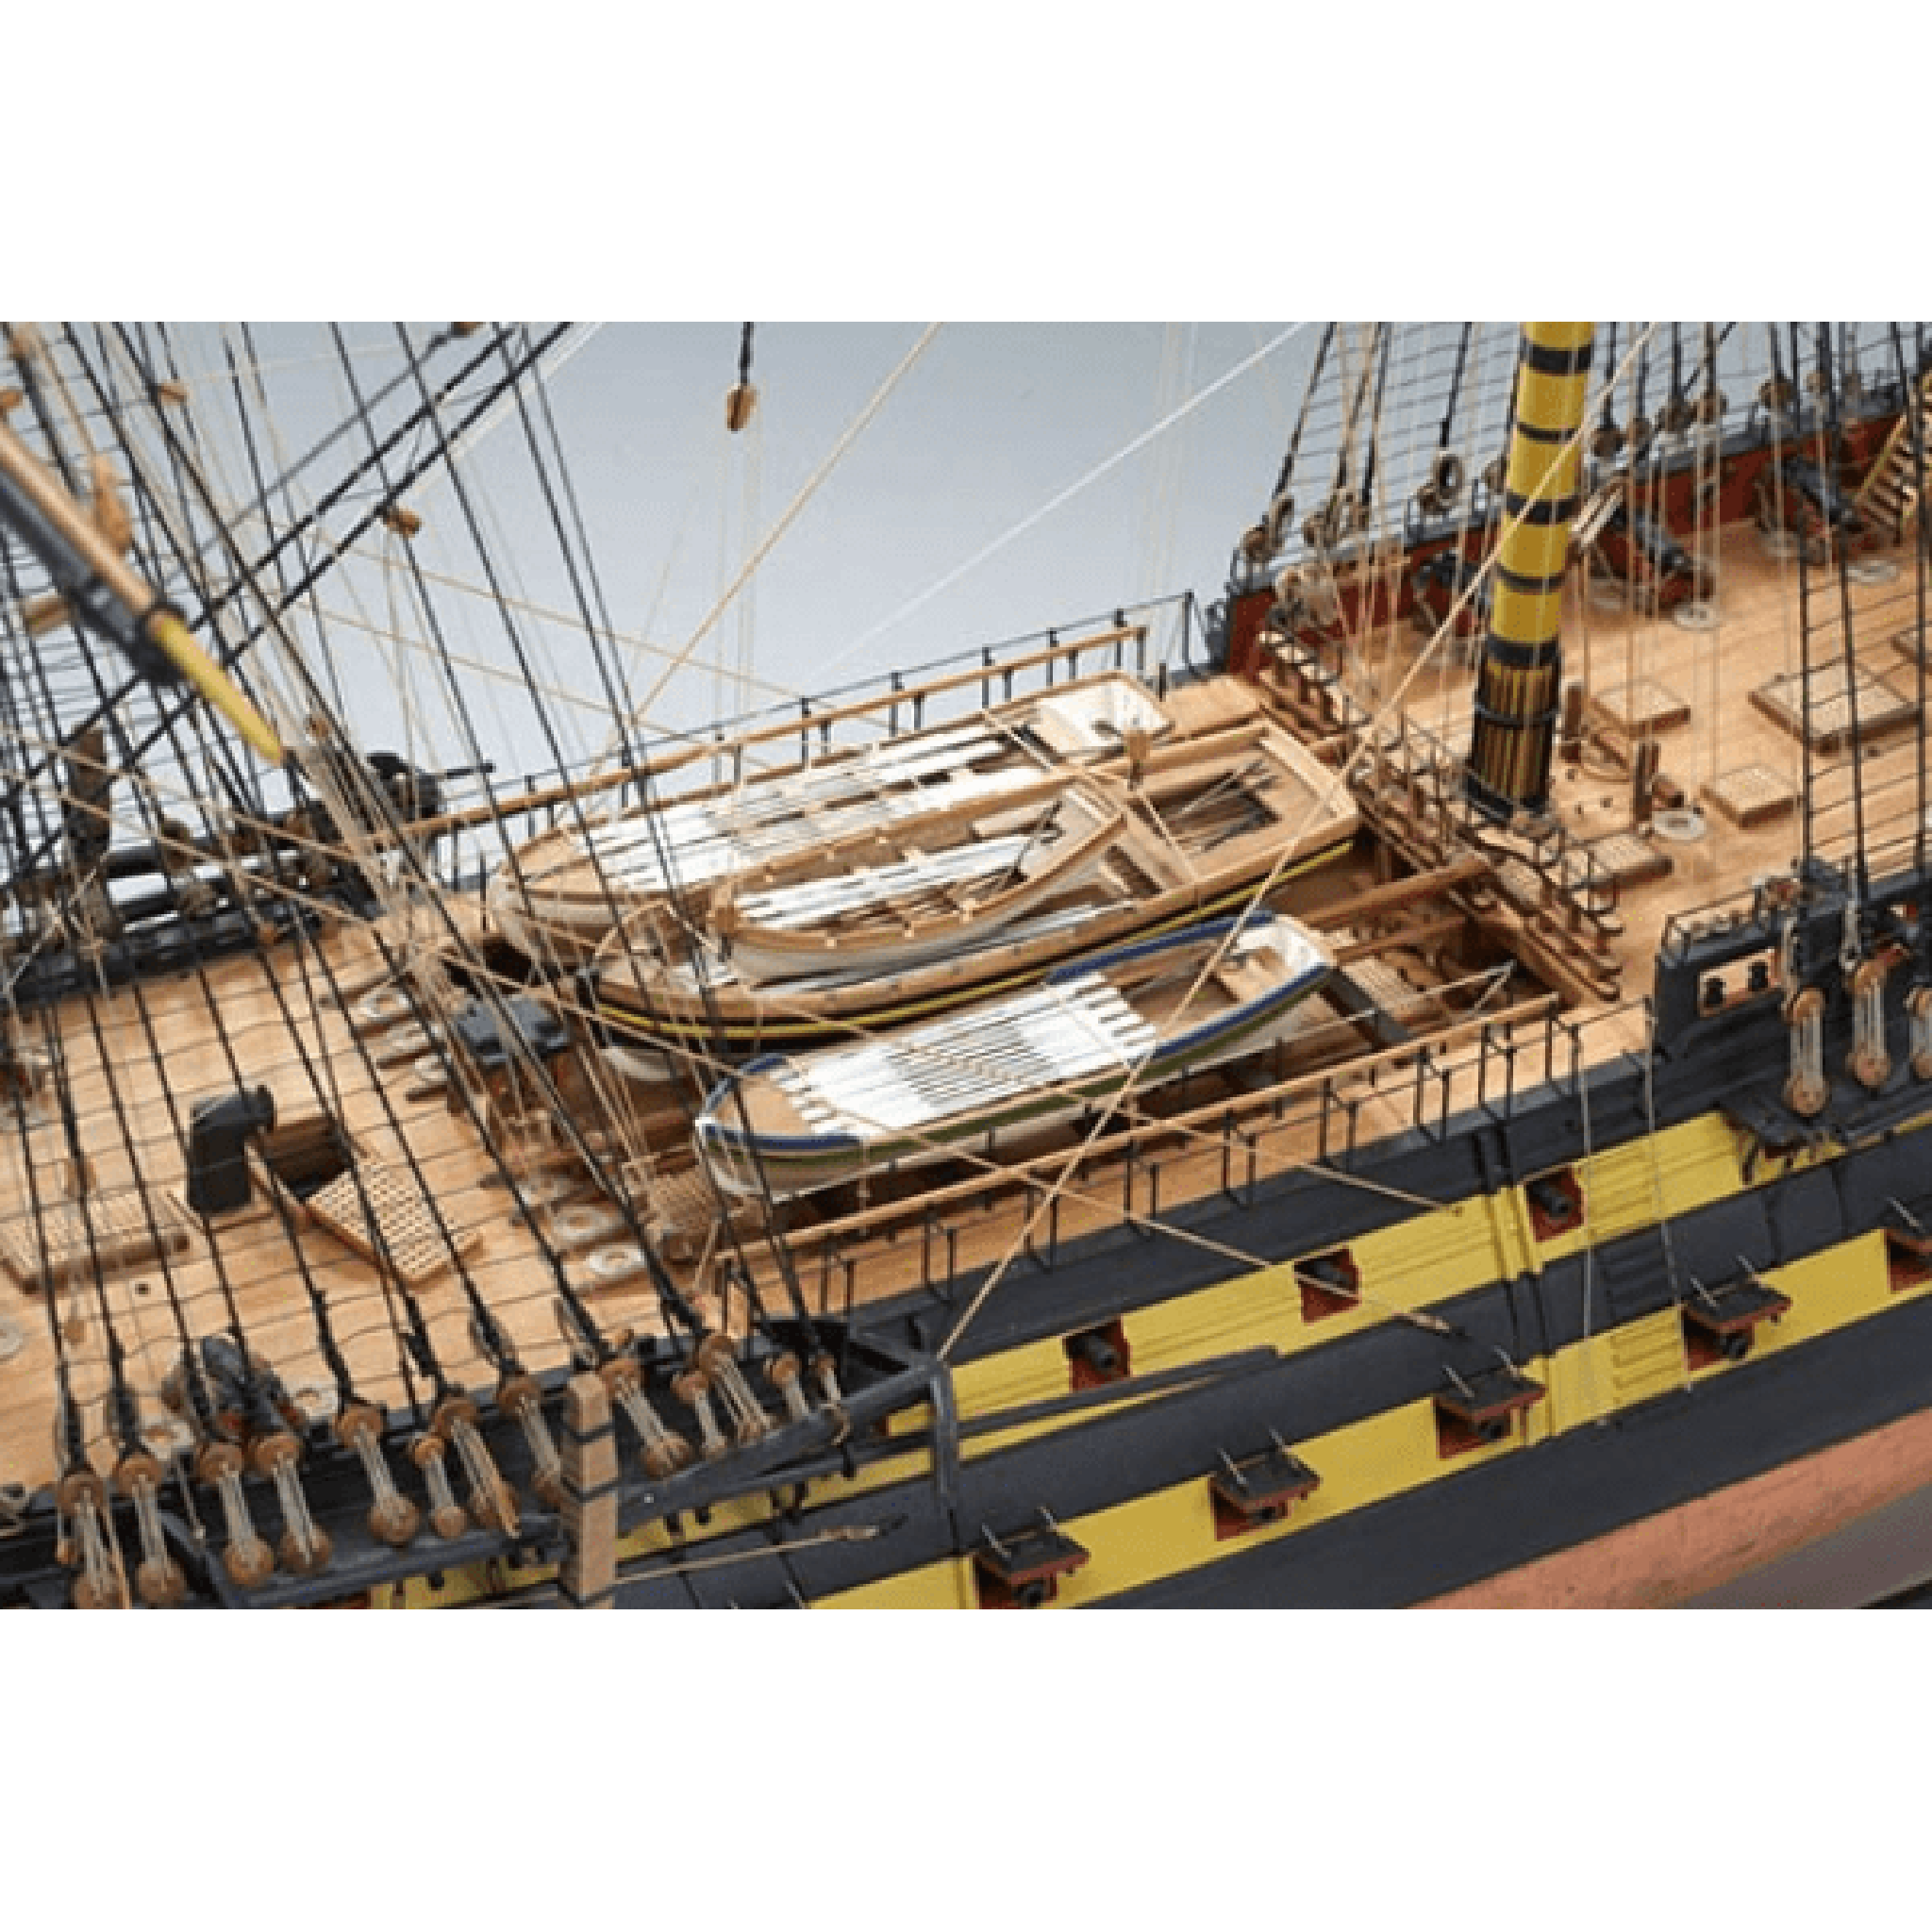 Buy Wooden Ship Kits & Wood Model Ship Kits